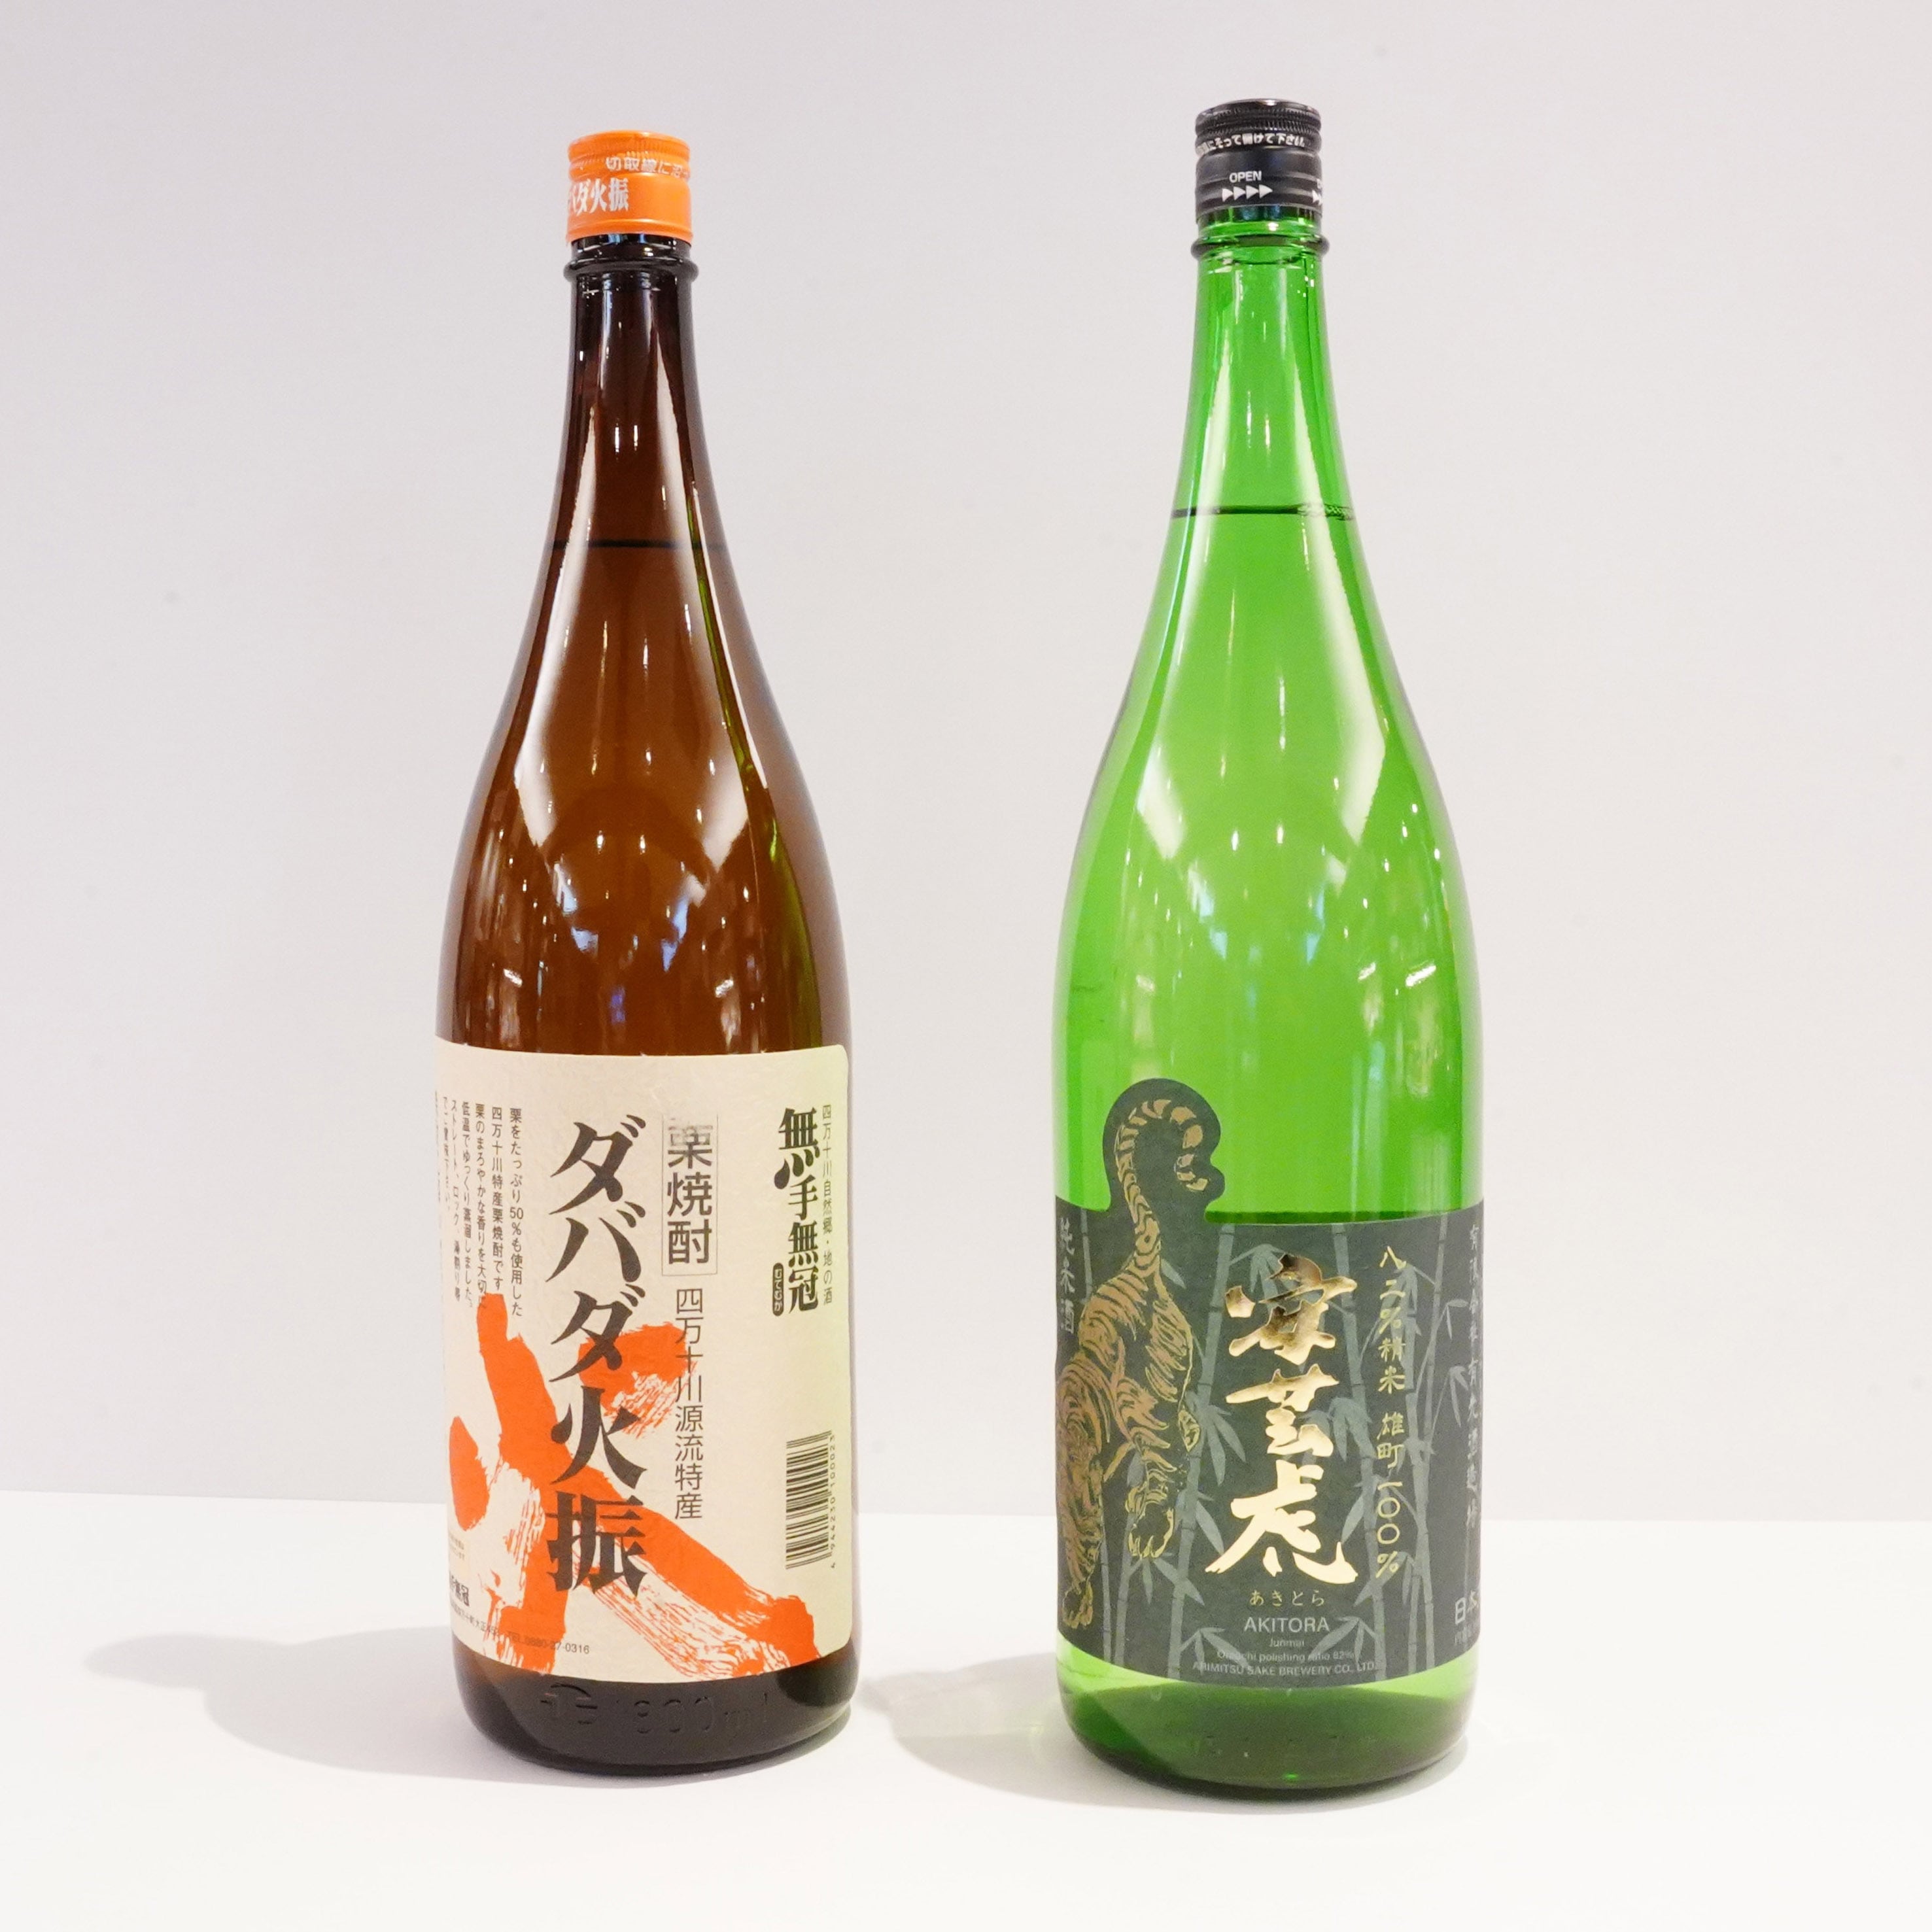 【一升瓶】栗焼酎「ダバダ火振」と日本酒「安芸虎」